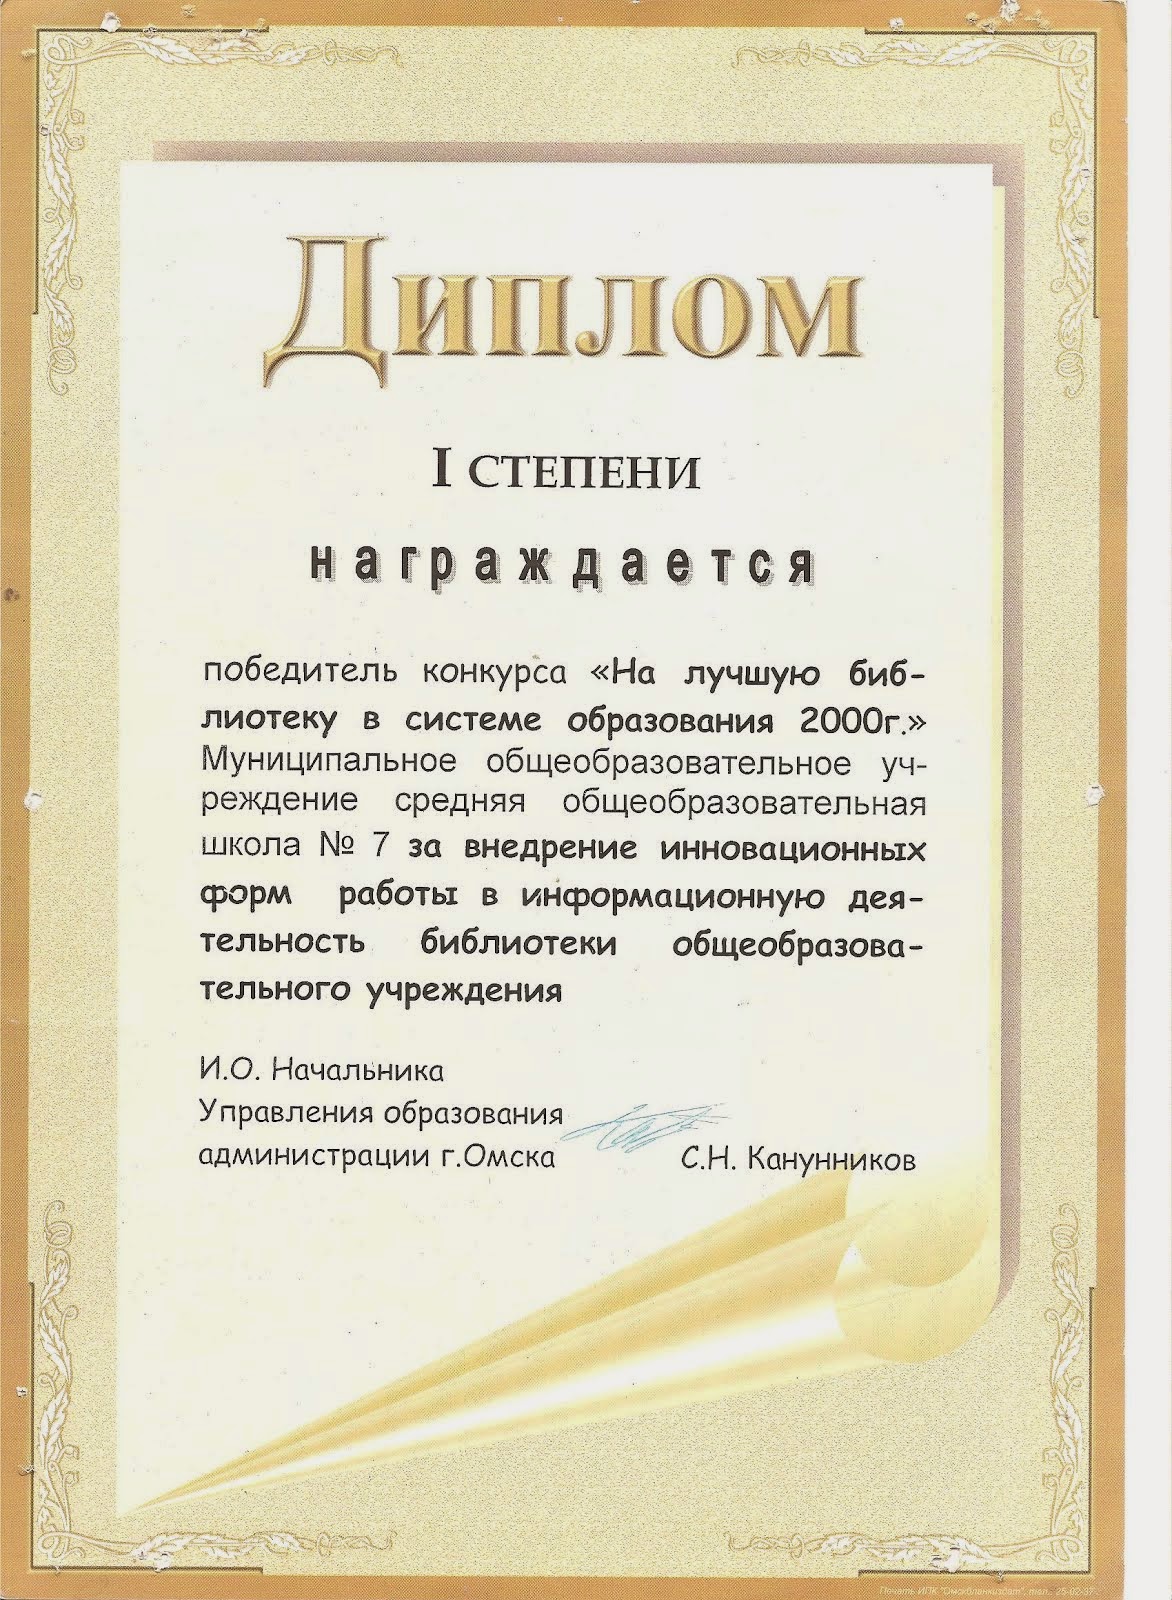 Городской конкурс библиотек образовательных учреждений. 2001г.